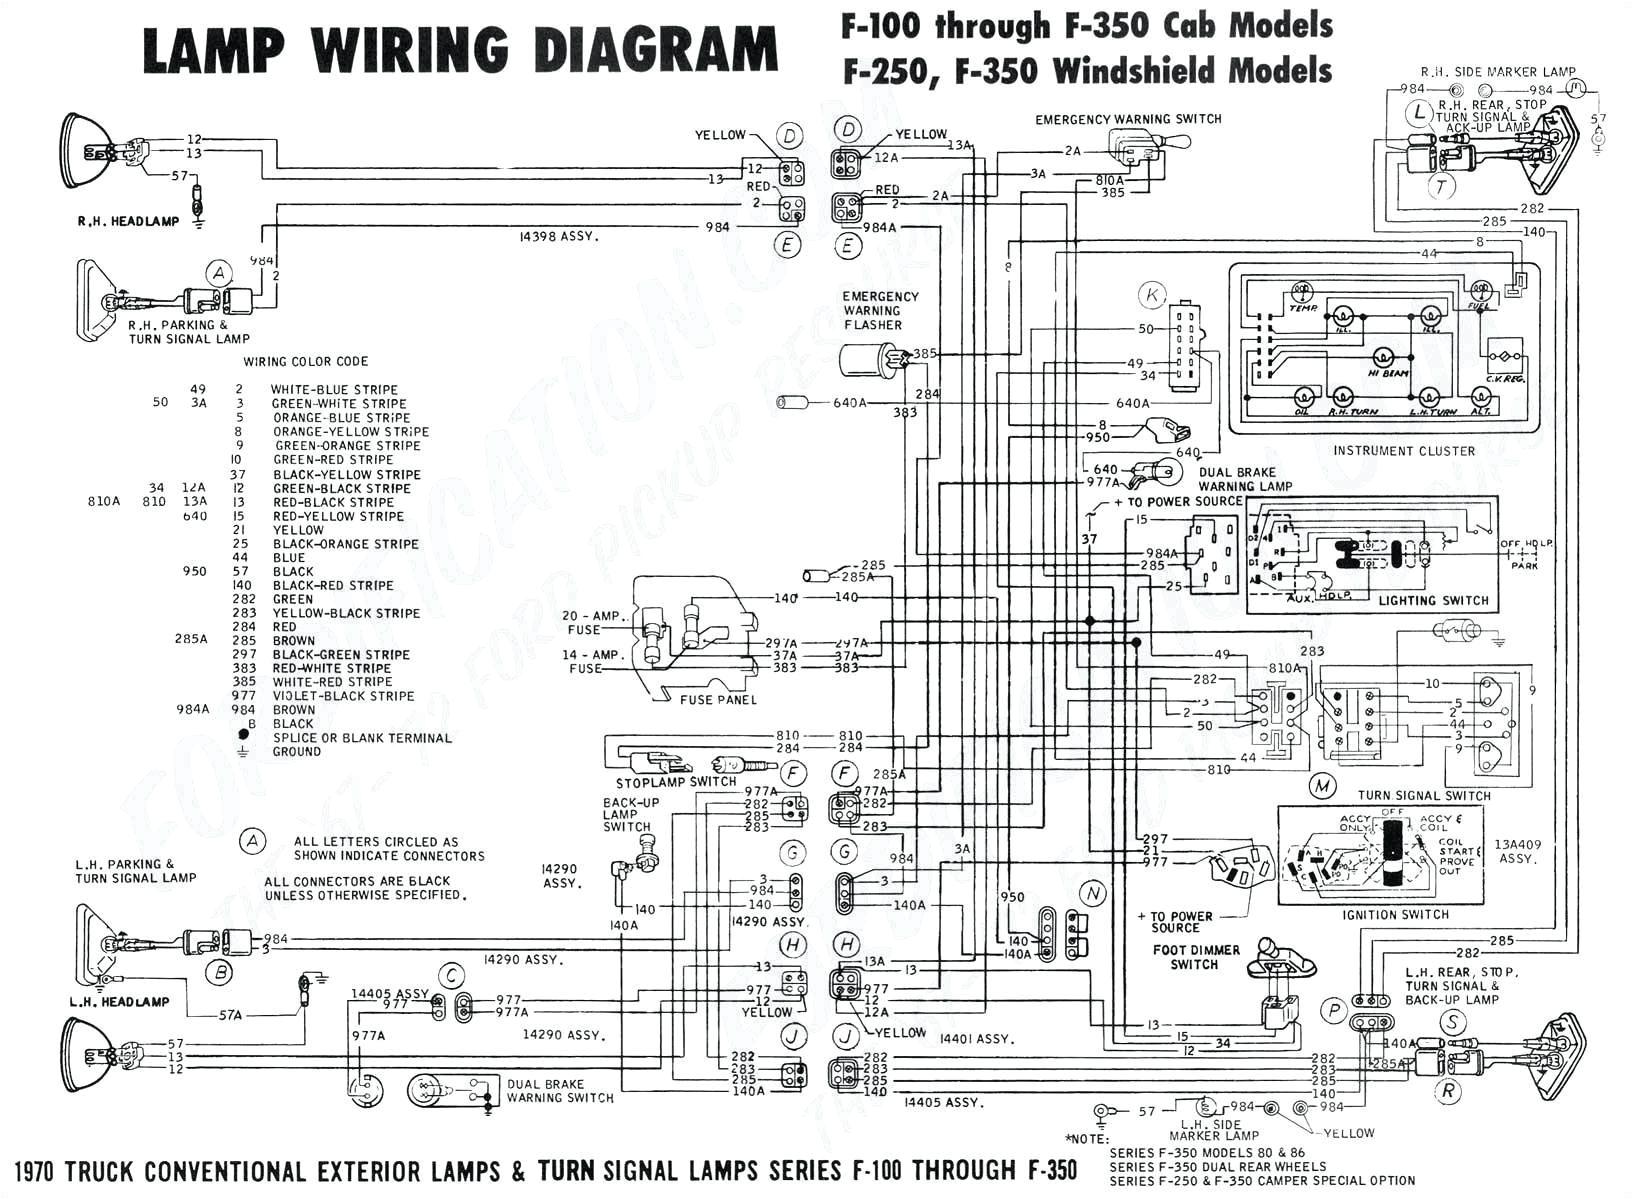 allen bradley centerline wiring diagram